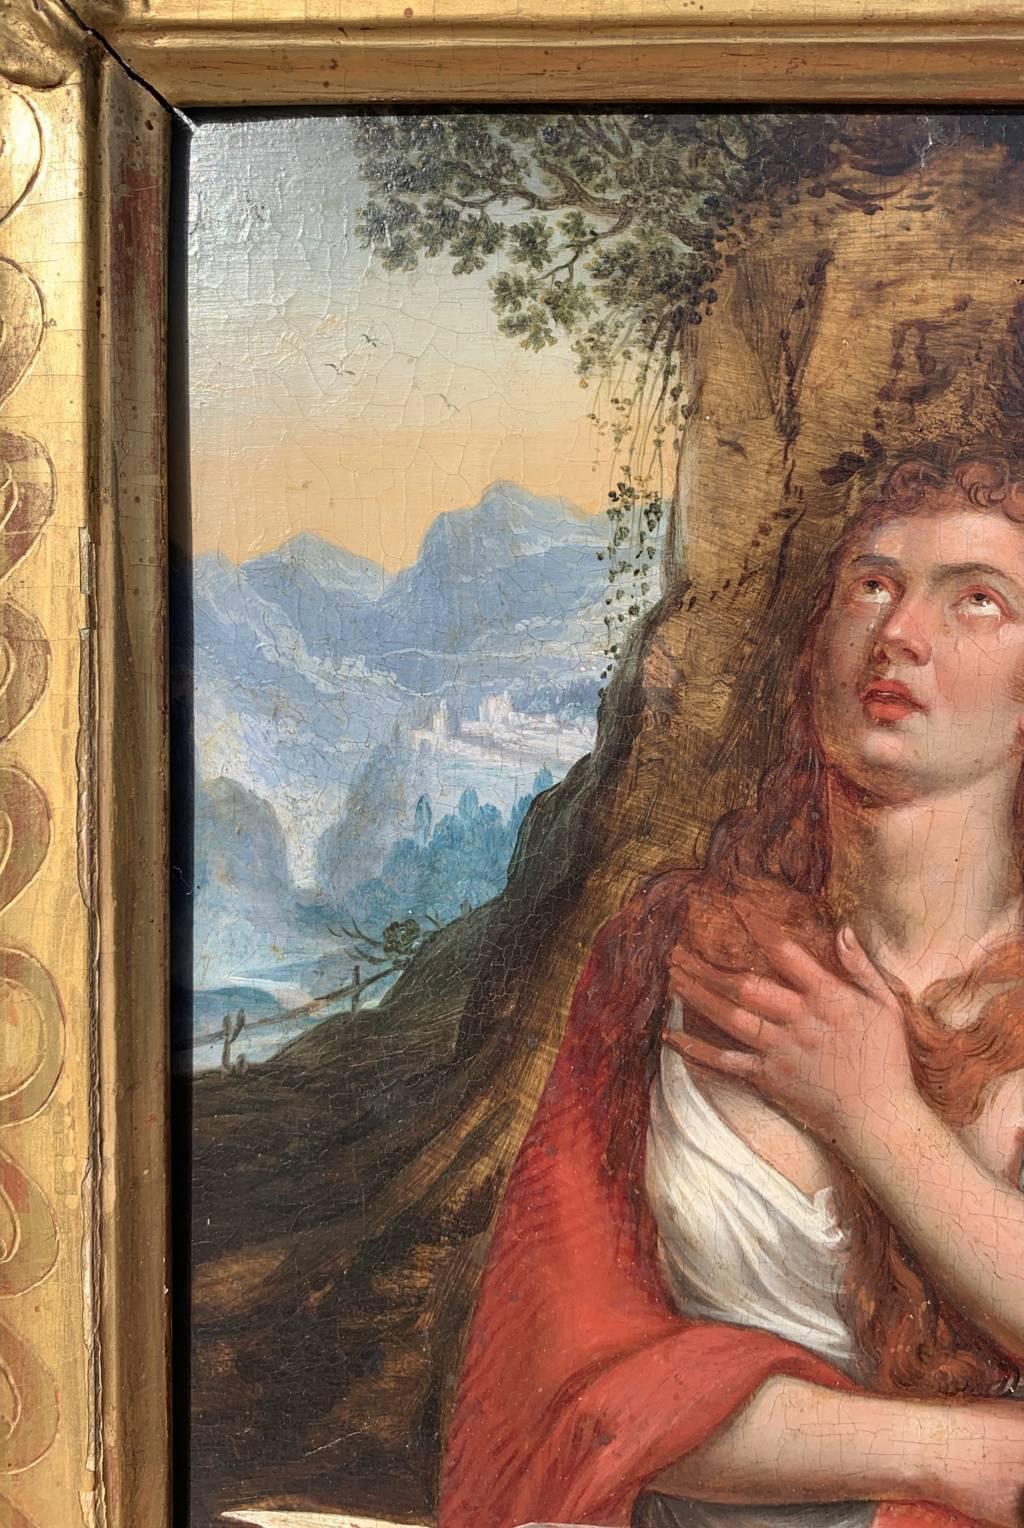 Anhängerin von Tiziano Vecellio (18. Jahrhundert) - Büßende Magdalena.

35,5 x 25 cm ohne Rahmen, 48,5 x 38,5 cm mit Rahmen.

Antikes Ölgemälde auf Holz, in einem geschnitzten und vergoldeten Holzrahmen.

- Das Werk greift das Gemälde von Tiziano